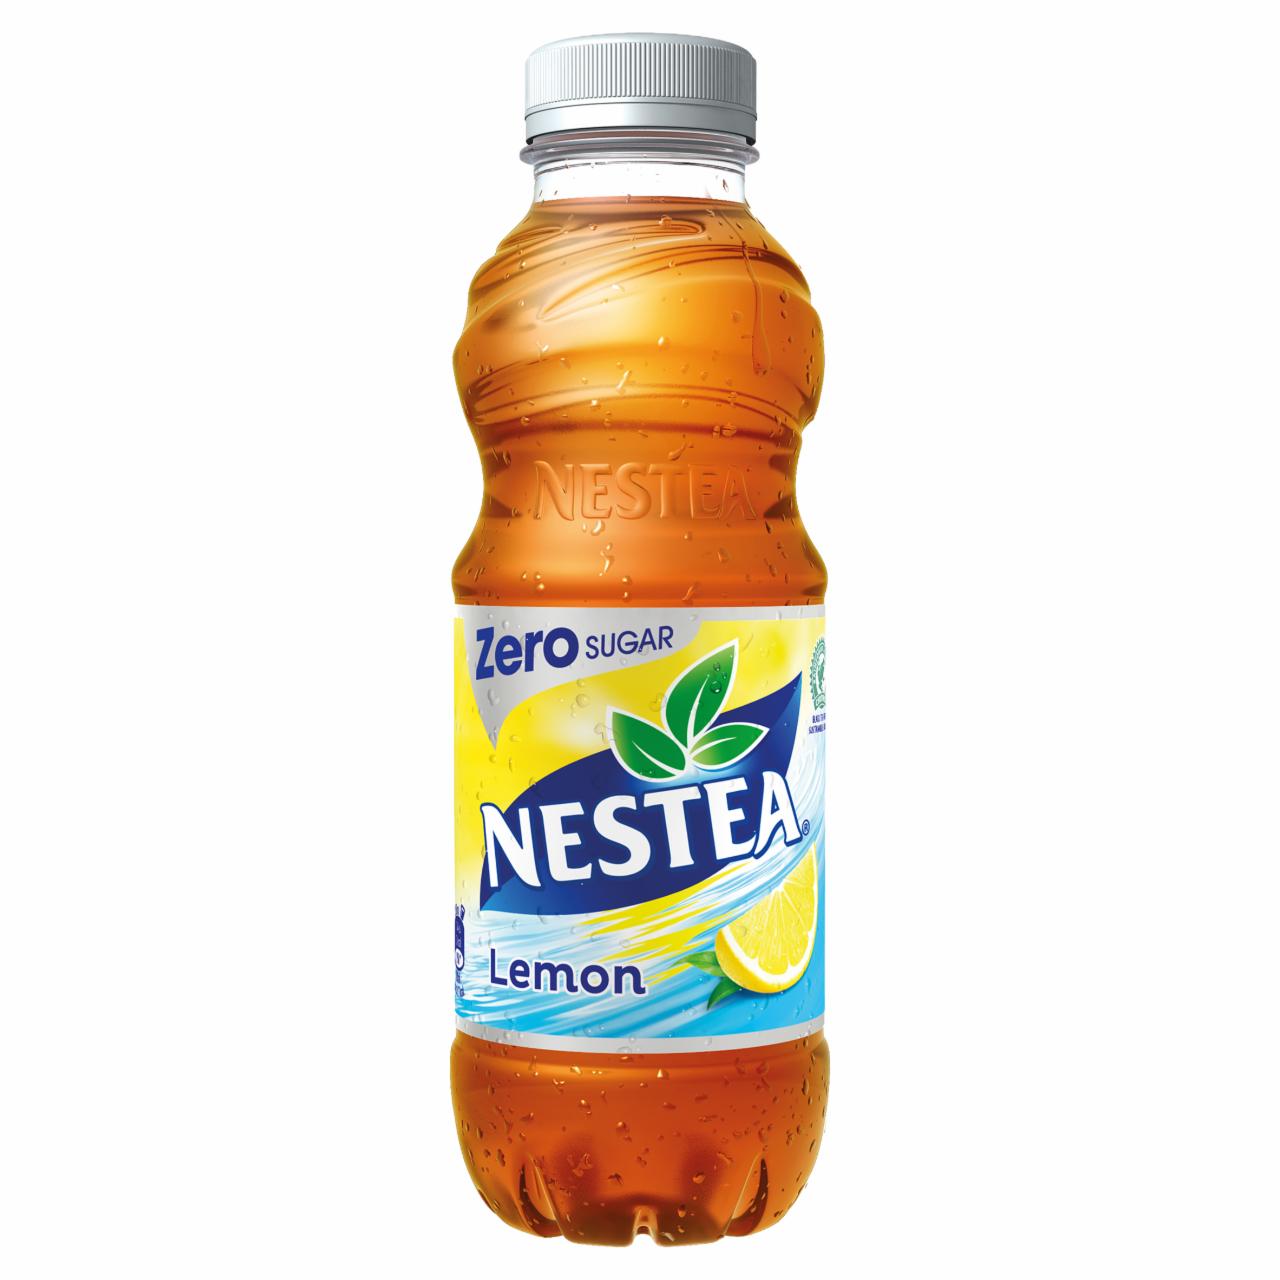 Képek - Nestea Zero citrom ízű cukormentes tea üdítőital édesítőszerekkel 0,5 l